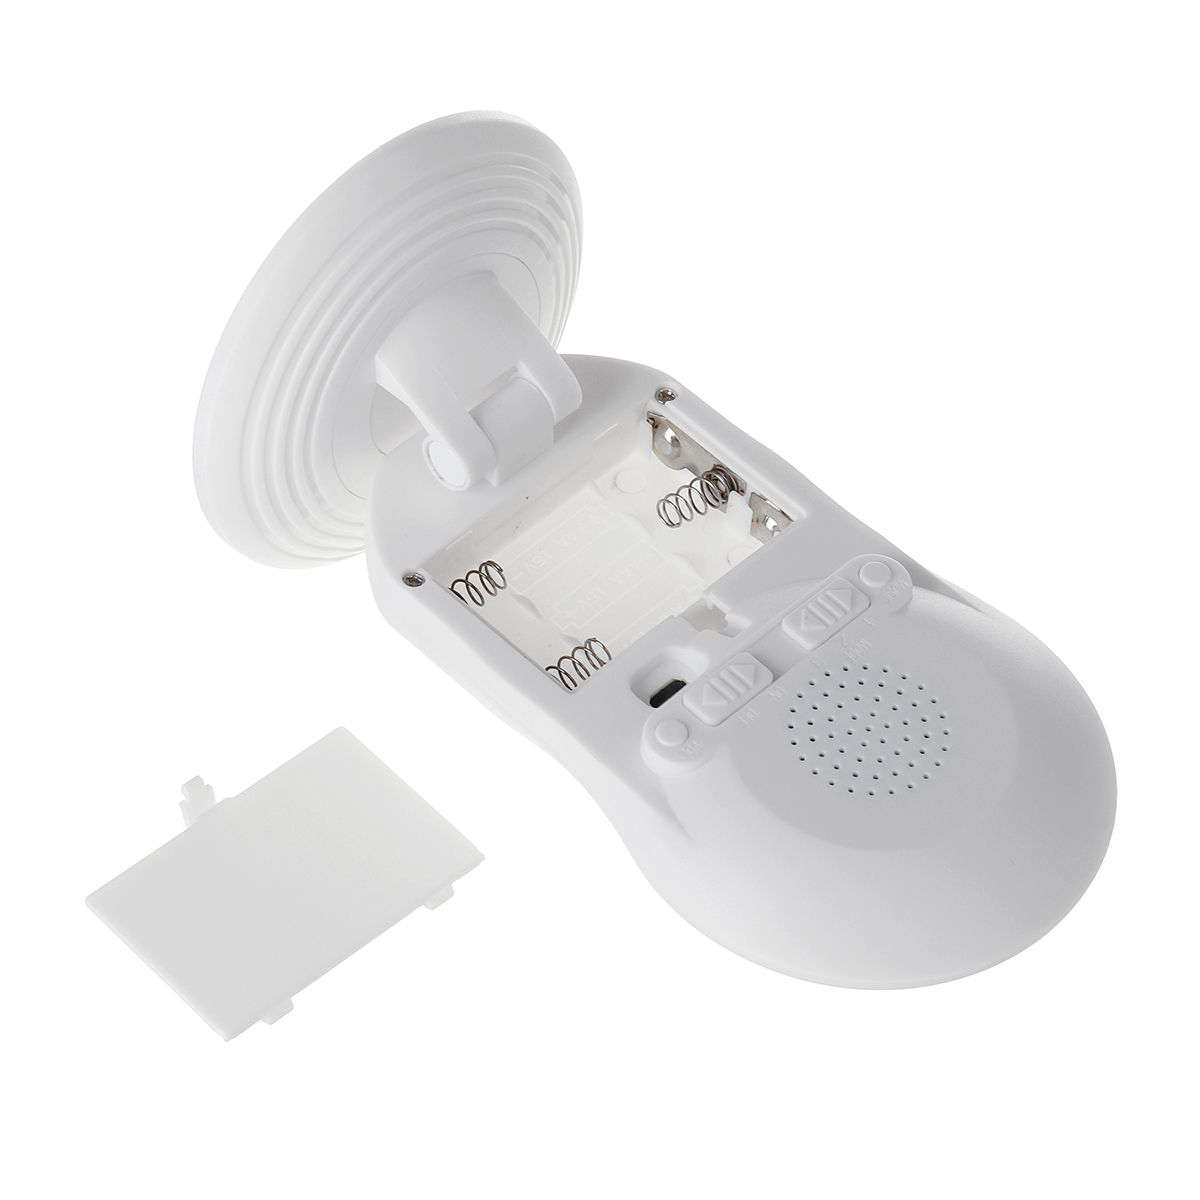 Wireless-Door-Bell-Alarm-System-Doorbell-Welcome-Intelligent-Infrared-Sensing-1546268